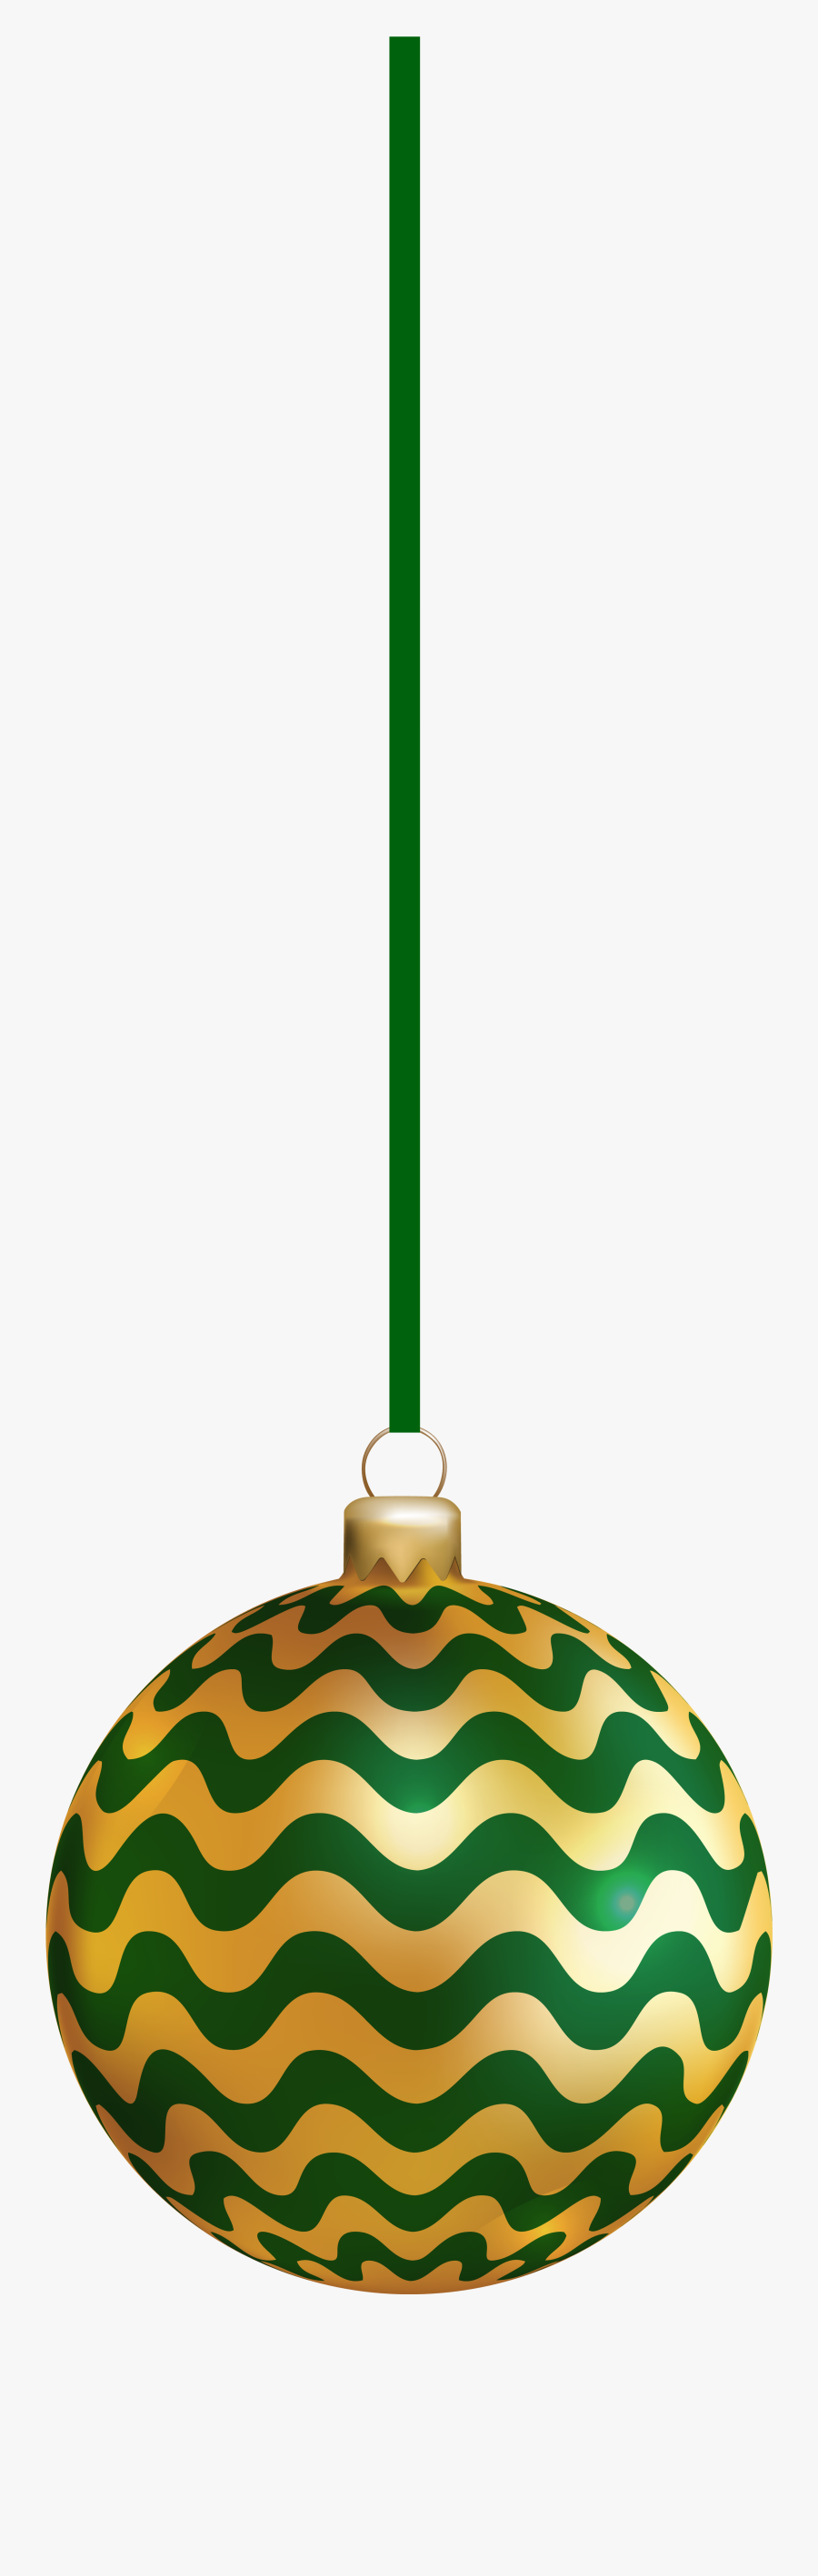 Christmas Ornament Green Deco Clip Art, Transparent Clipart